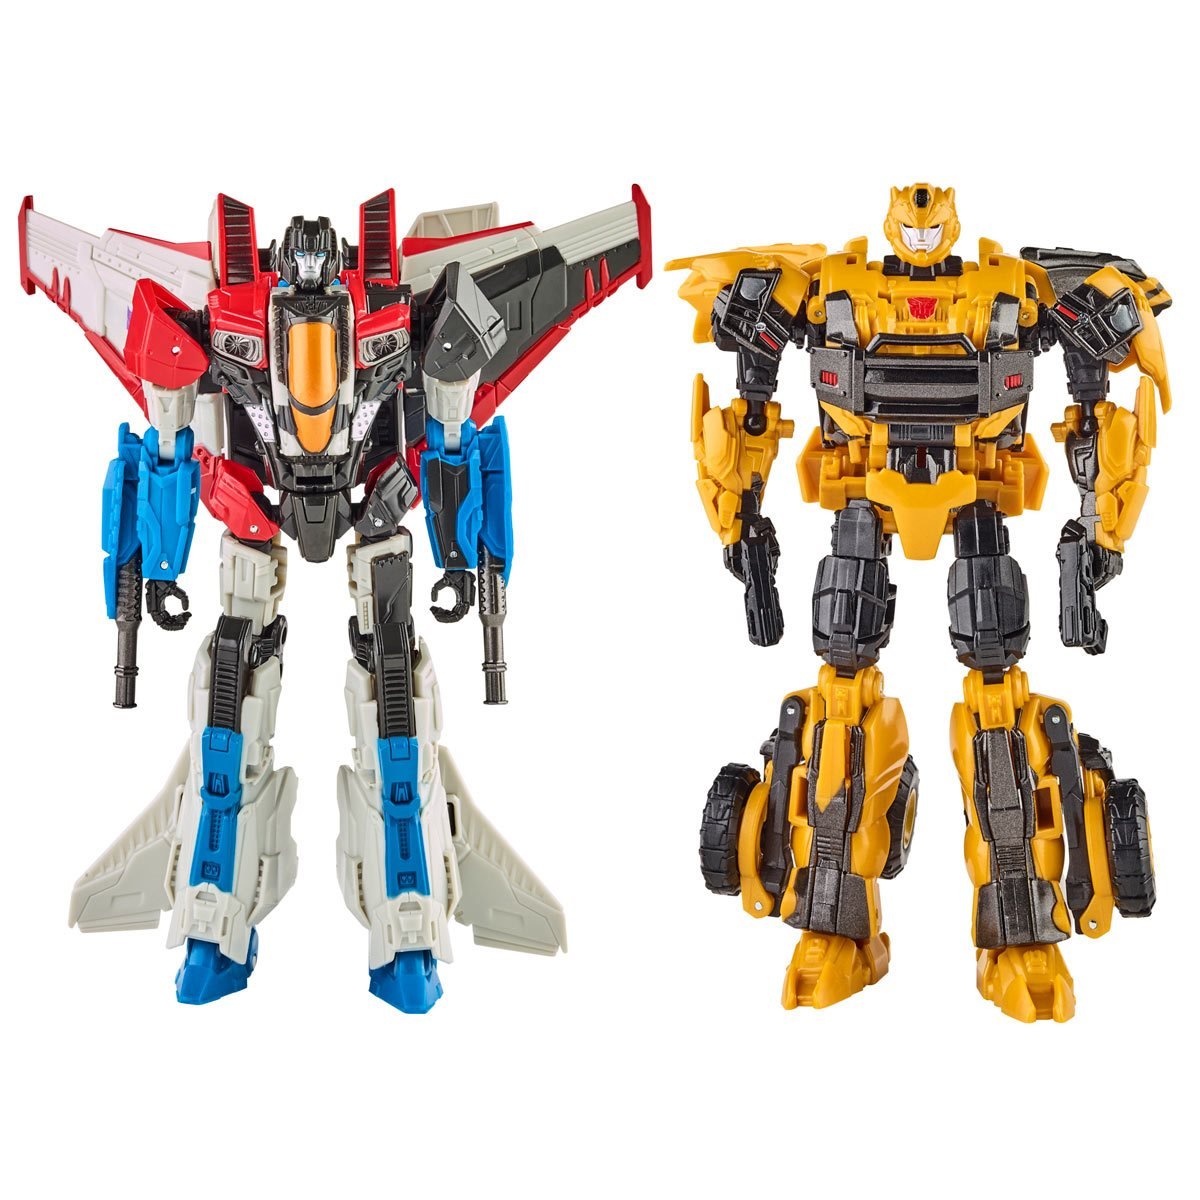 Transformers Generations Combiner Wars Starscream 9 Action Figure NEW!